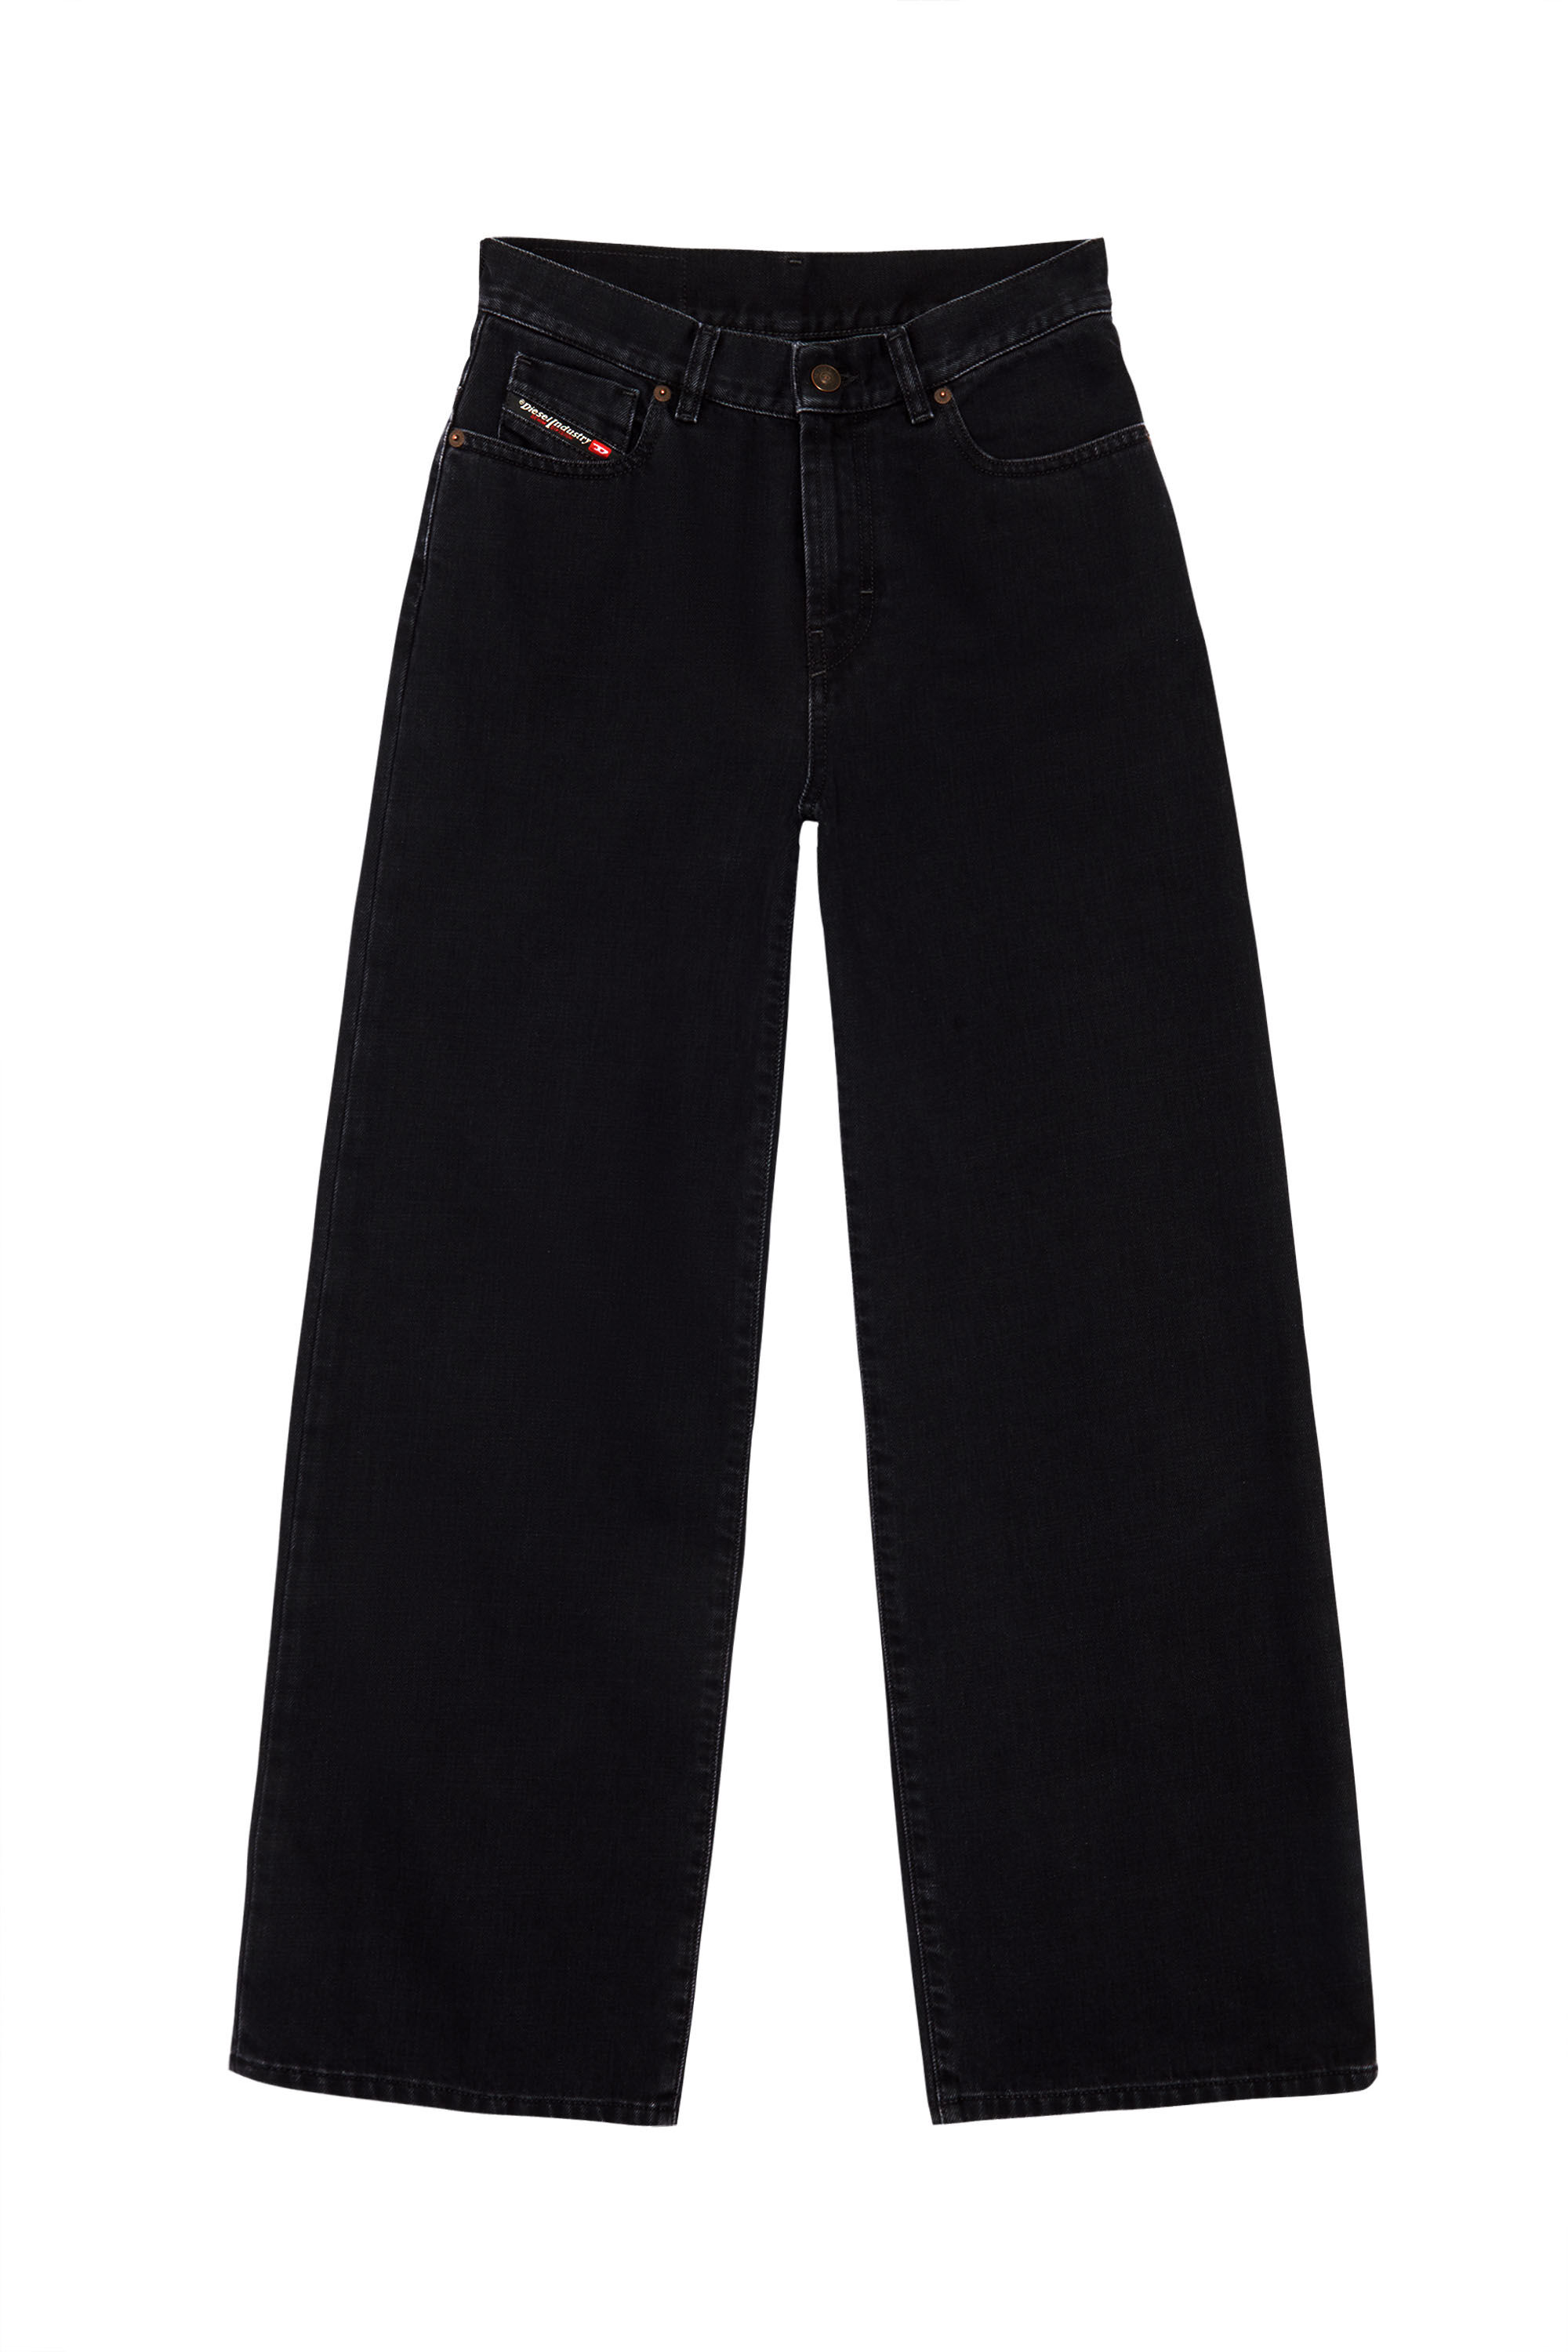 Diesel - Bootcut and Flare Jeans 2000 Widee Z09RL, Black/Dark grey - Image 2